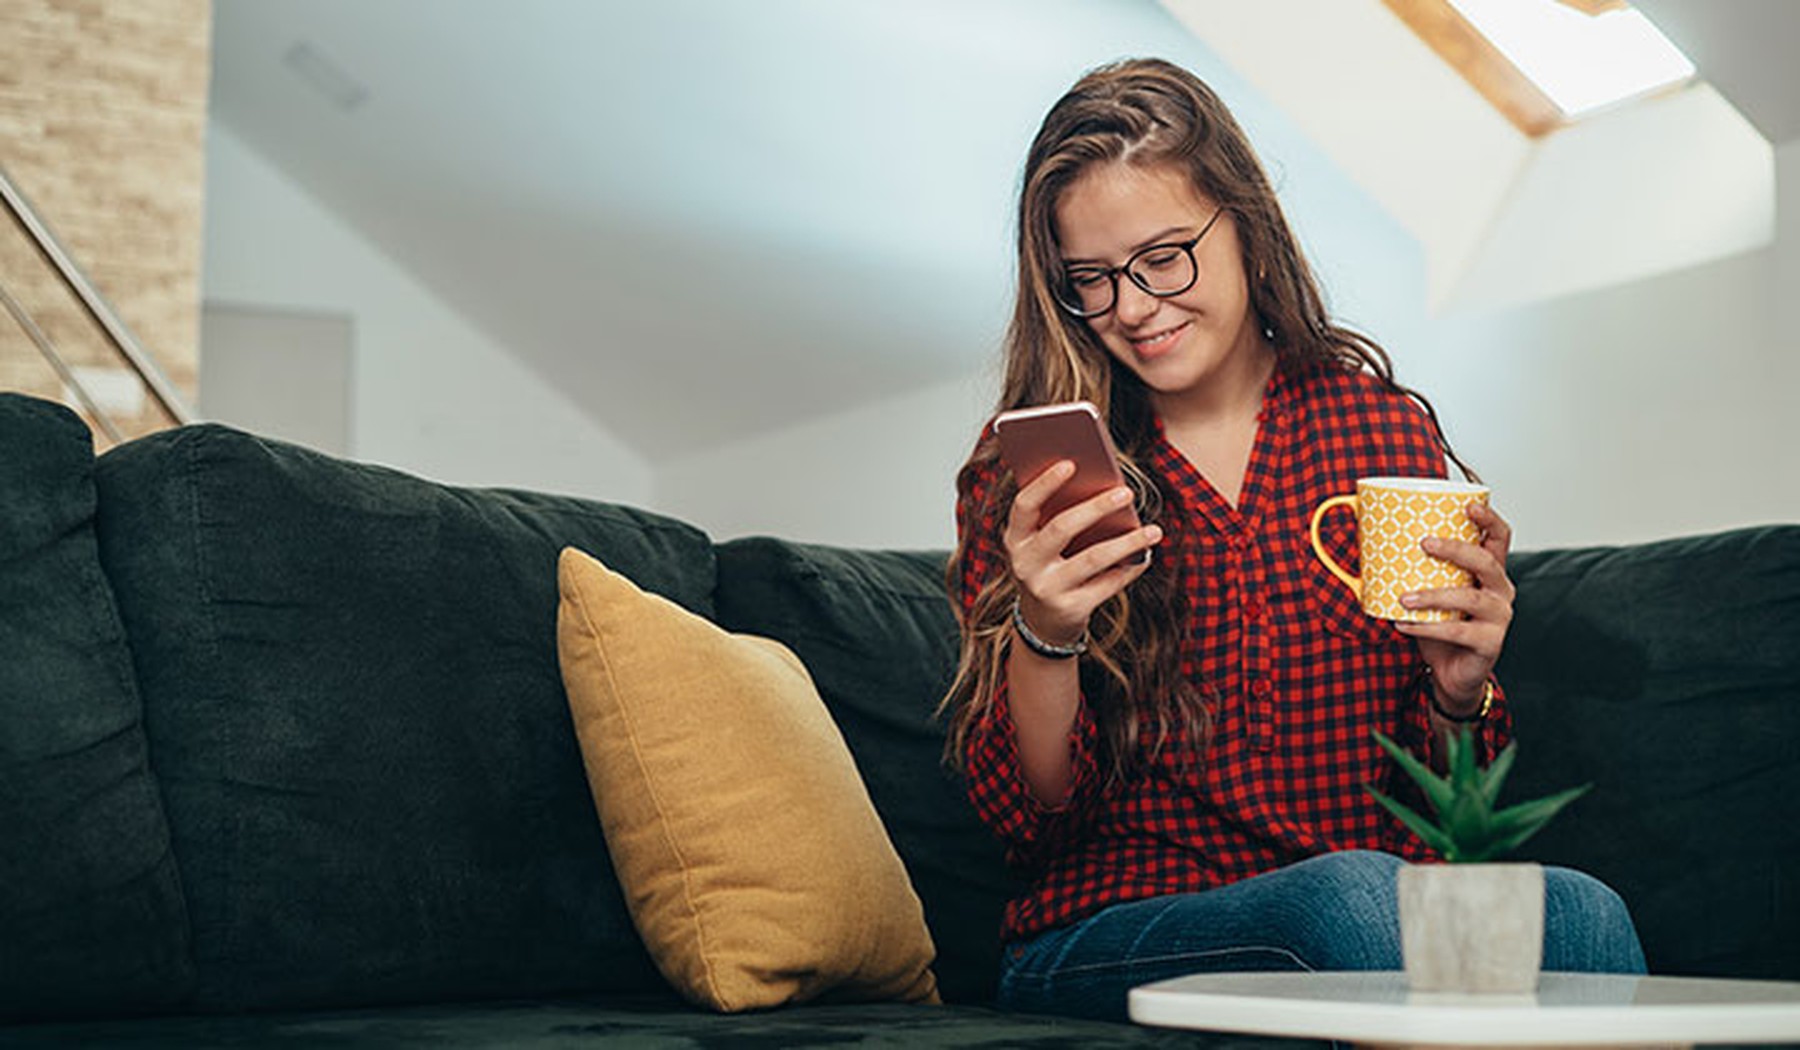 Plano completo de una joven sentada en un sofá y sintiéndose emocionada mientras compra online con su smartphone.